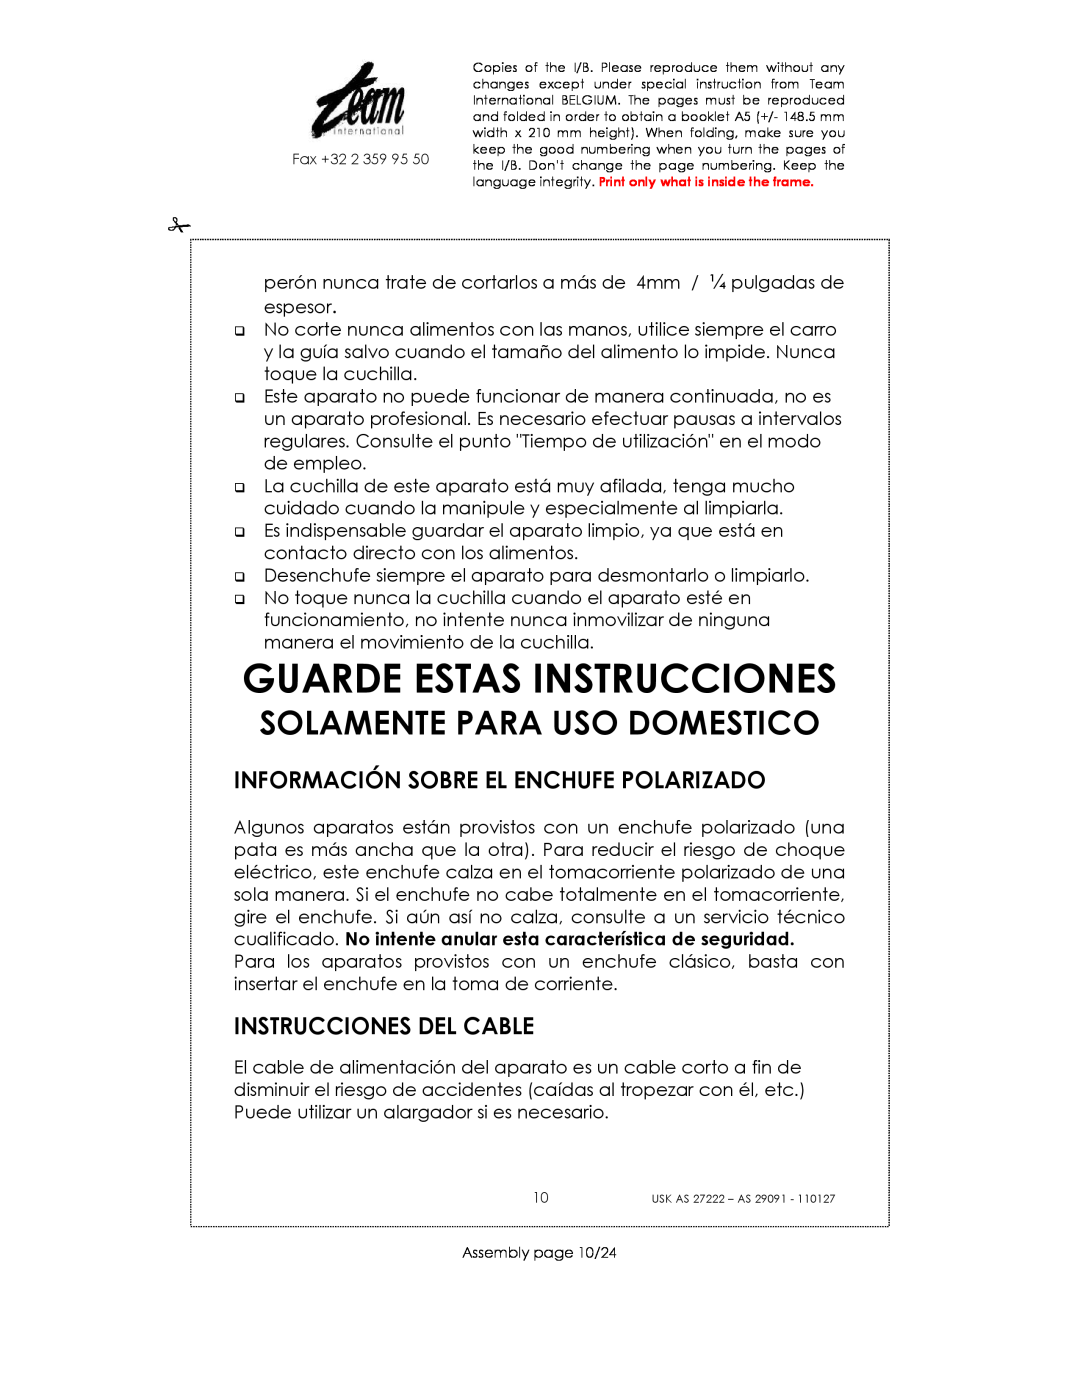 Kalorik USK AS 29091 manual Guarde Estas Instrucciones, Información Sobre El Enchufe Polarizado, Instrucciones Del Cable 